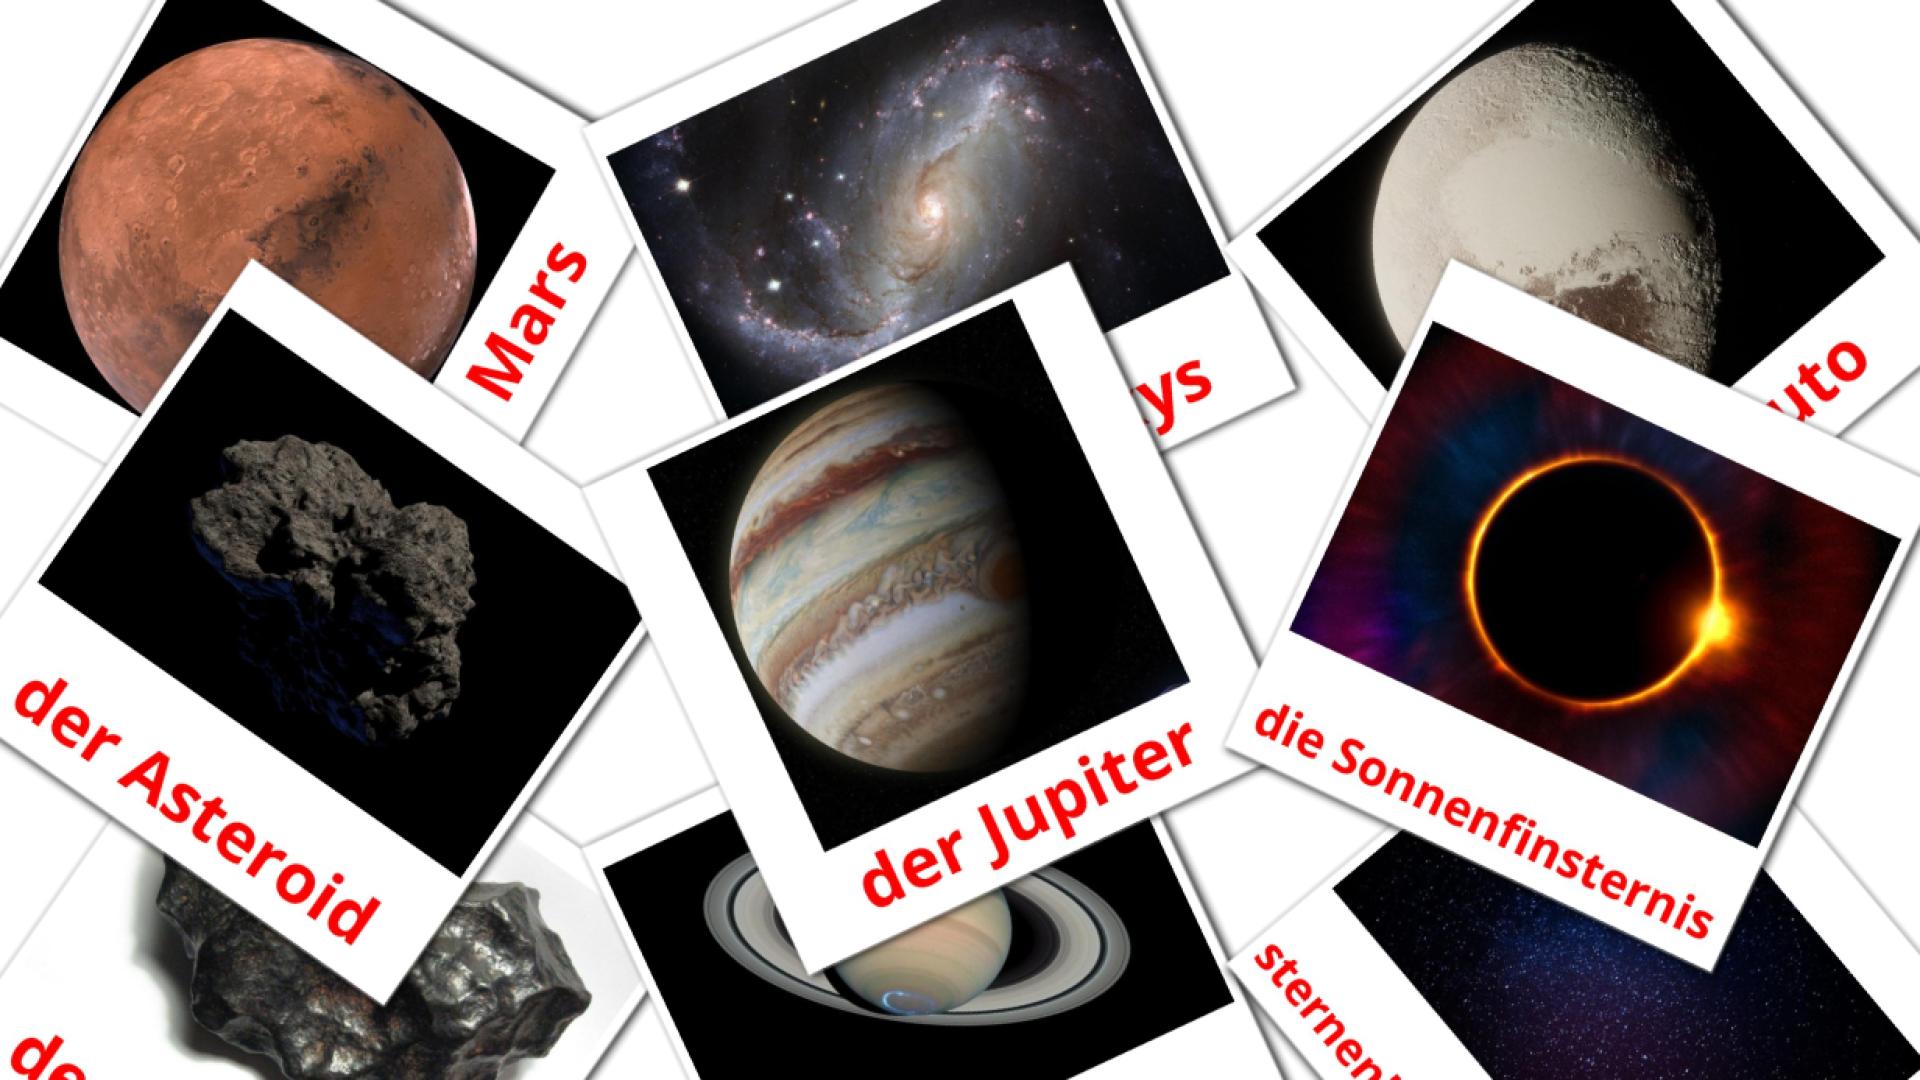 Sistema solar - tarjetas de vocabulario en alemán